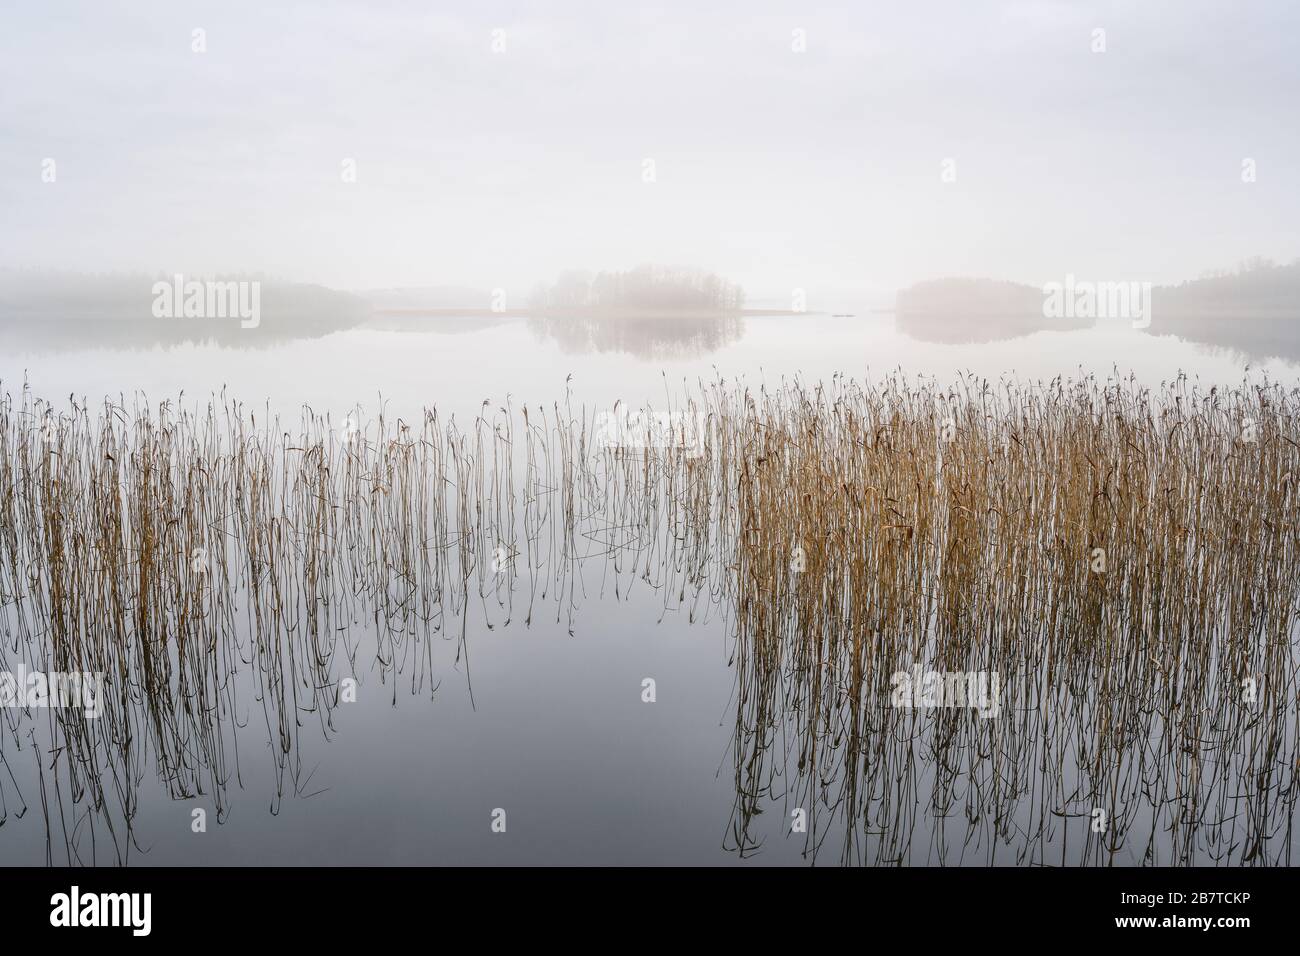 Paesaggio foggy con lago tranquillo. Nebbia sull'acqua. Aria appannata. Mattina presto freddo in autunno. Bel momento di libertà e atmosfera tranquilla nella natura Foto Stock